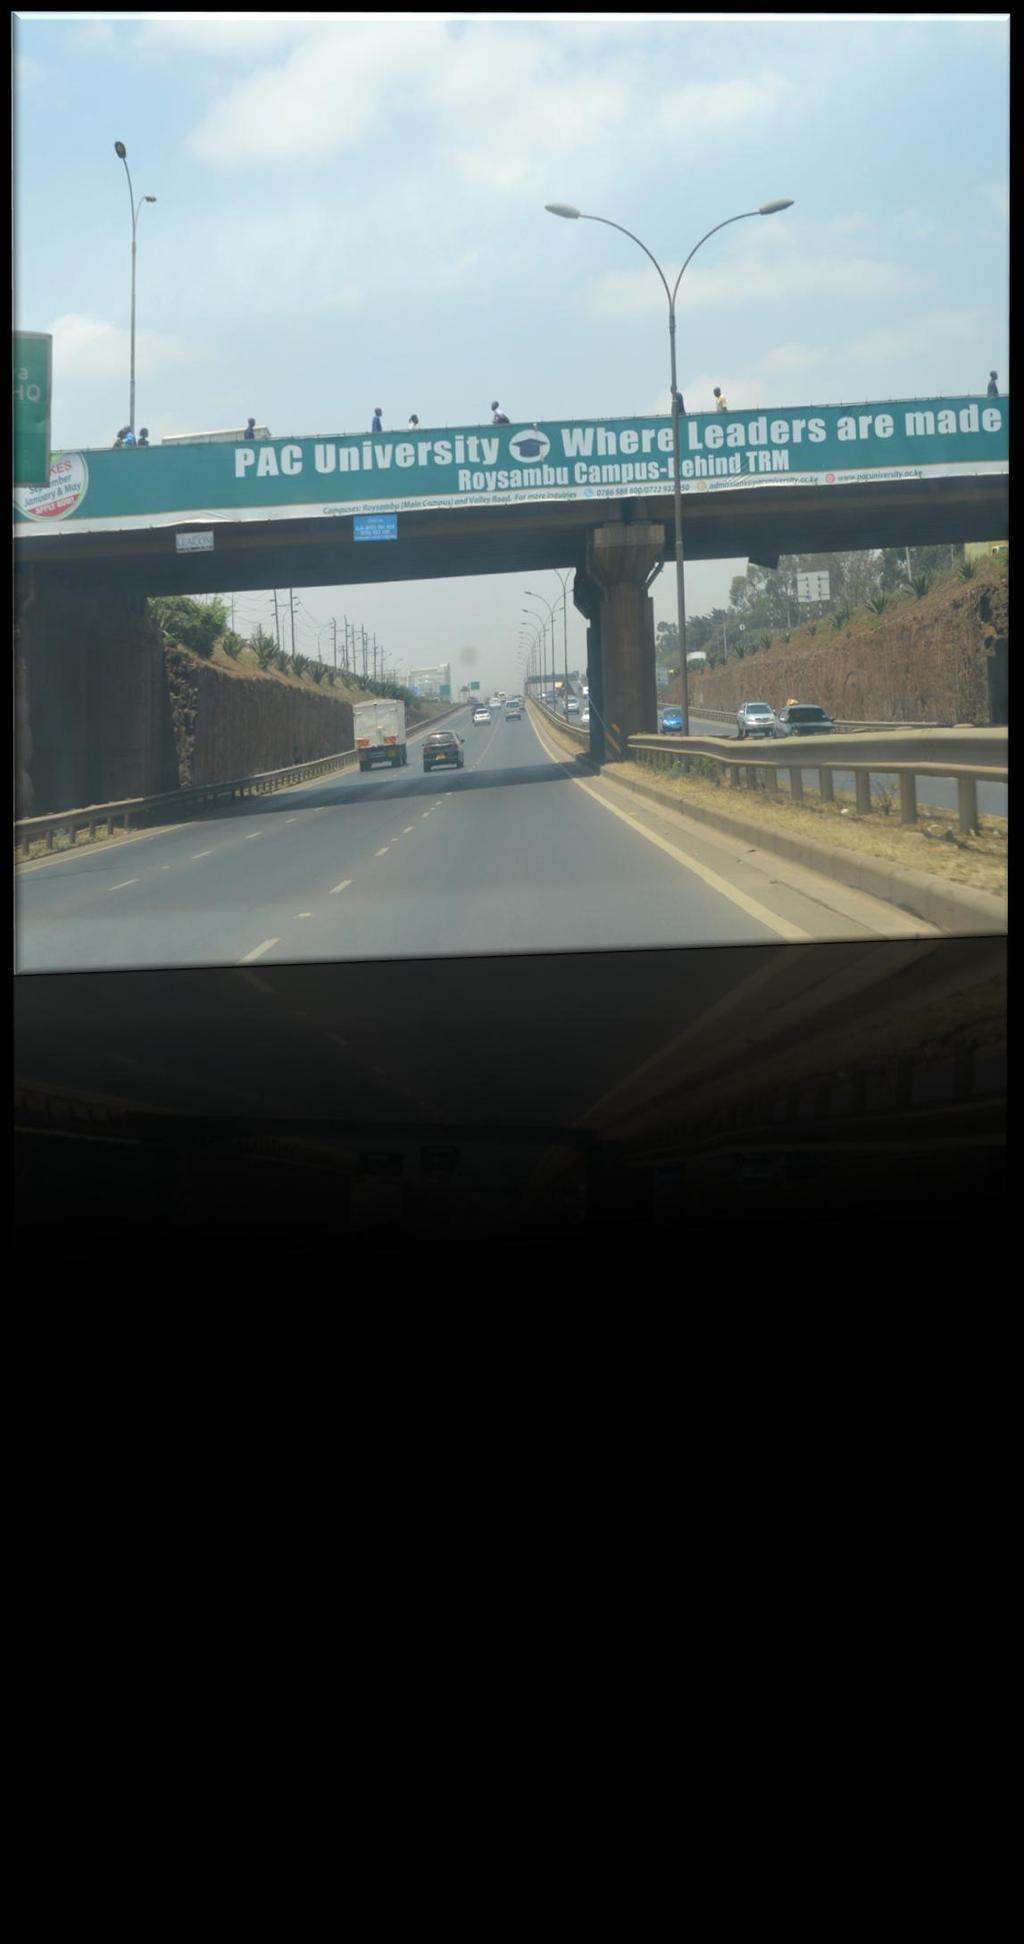 Nairobi-Thika Road Sign showing a universityoff Nairobi- Thika Road